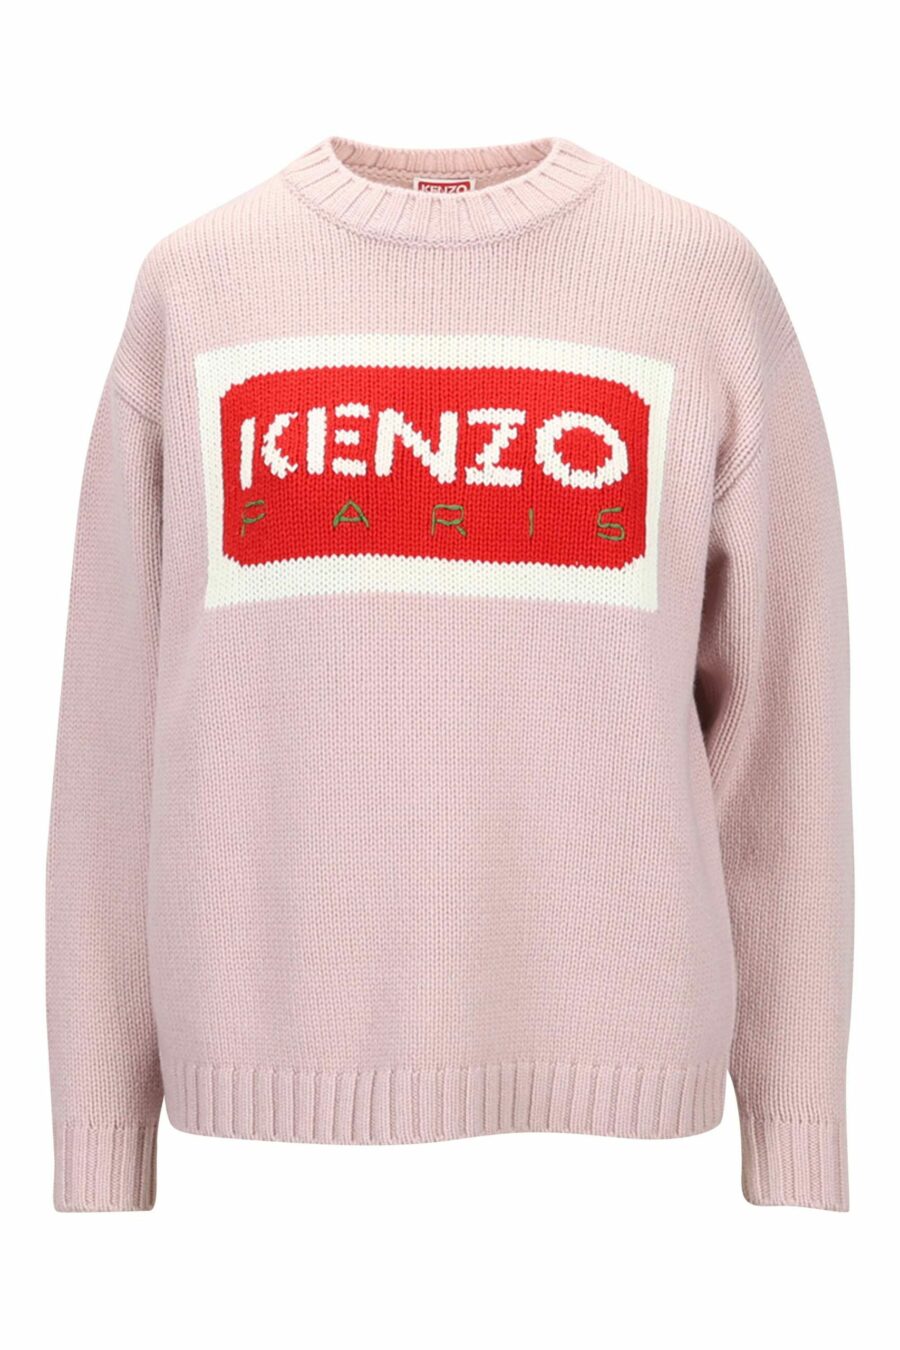 Camisola rosa claro com maxilogue "kenzo paris" - 3612230530331